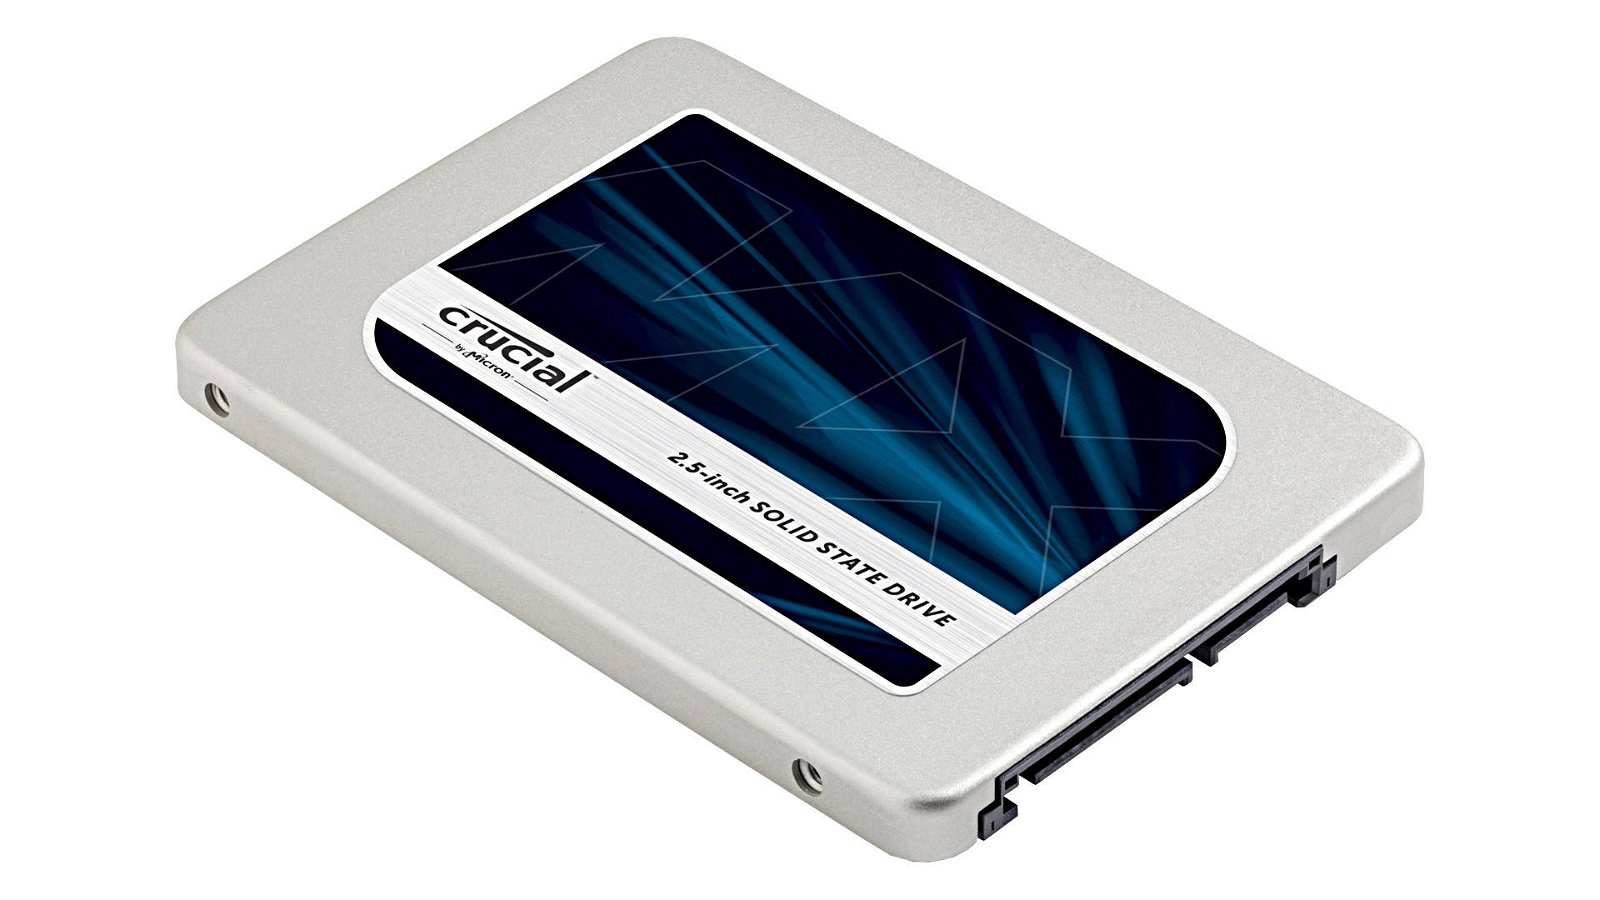 Immagine di SSD Crucial MX100, MX200 e MX300, aggiornamento per risolvere un problema di sicurezza